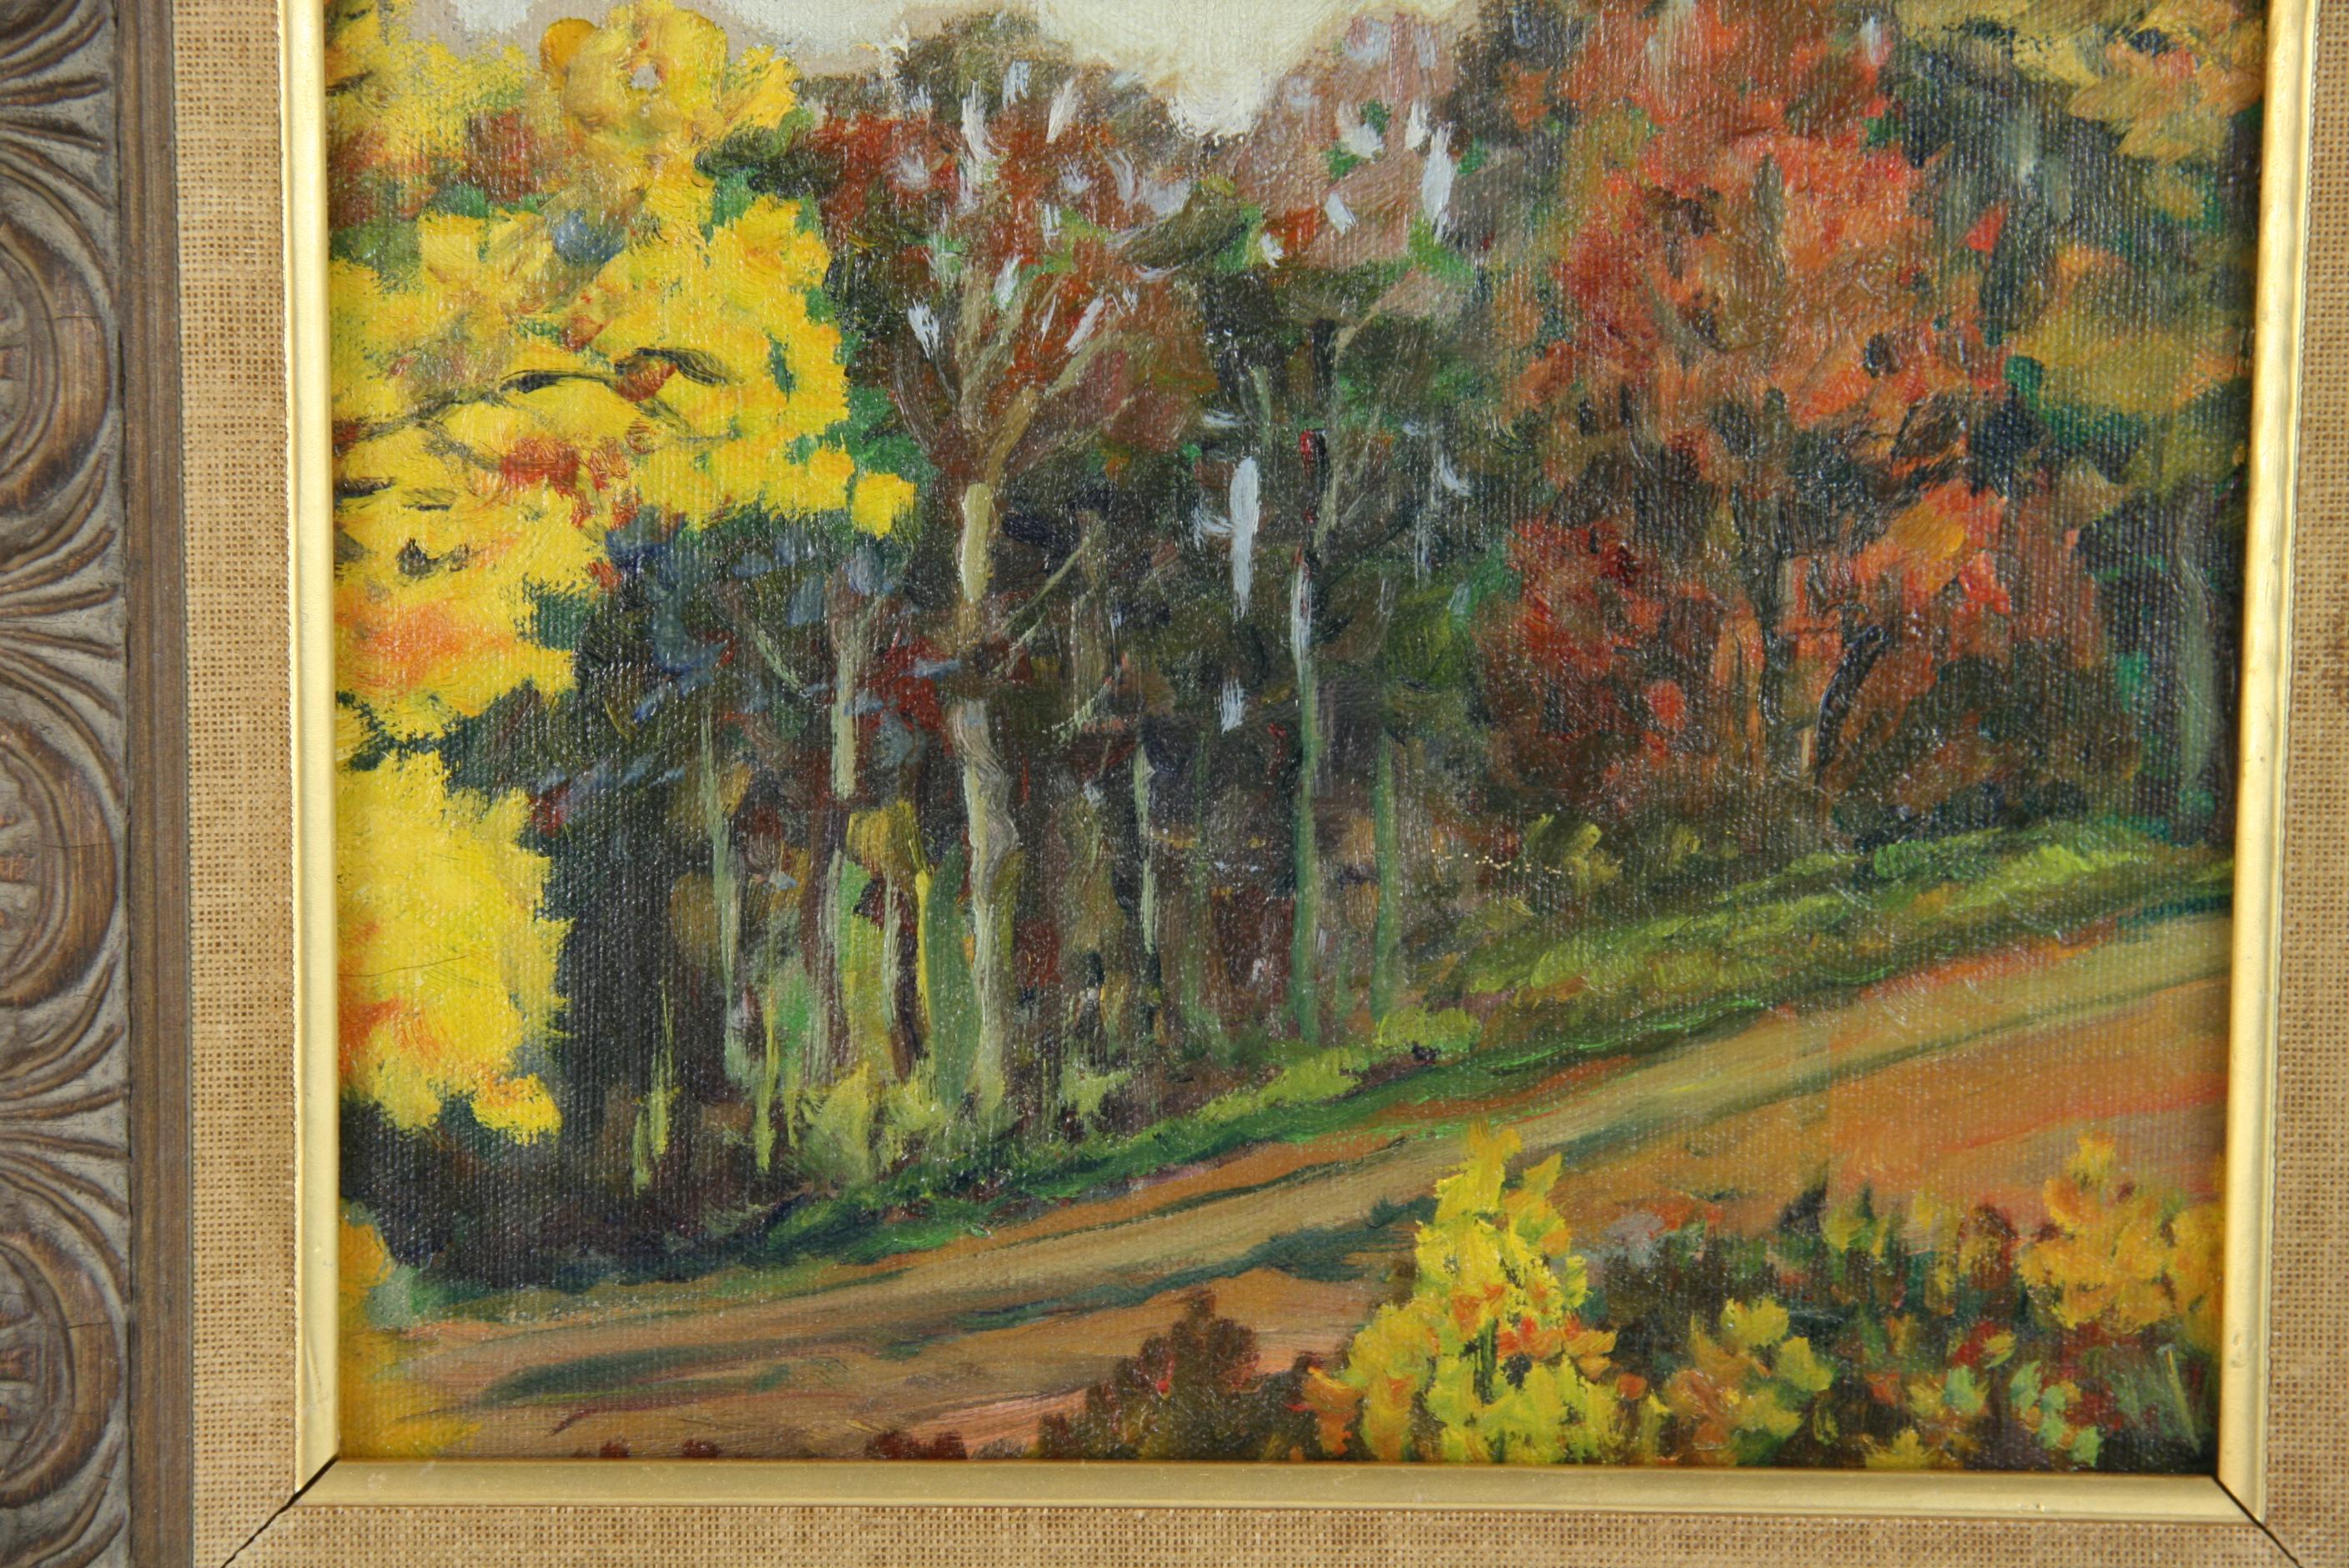 3765 Neuengland  Landschaftsmalerei
In einem handgeschnitzten Holzrahmen
Bildgröße 7.5x9.5